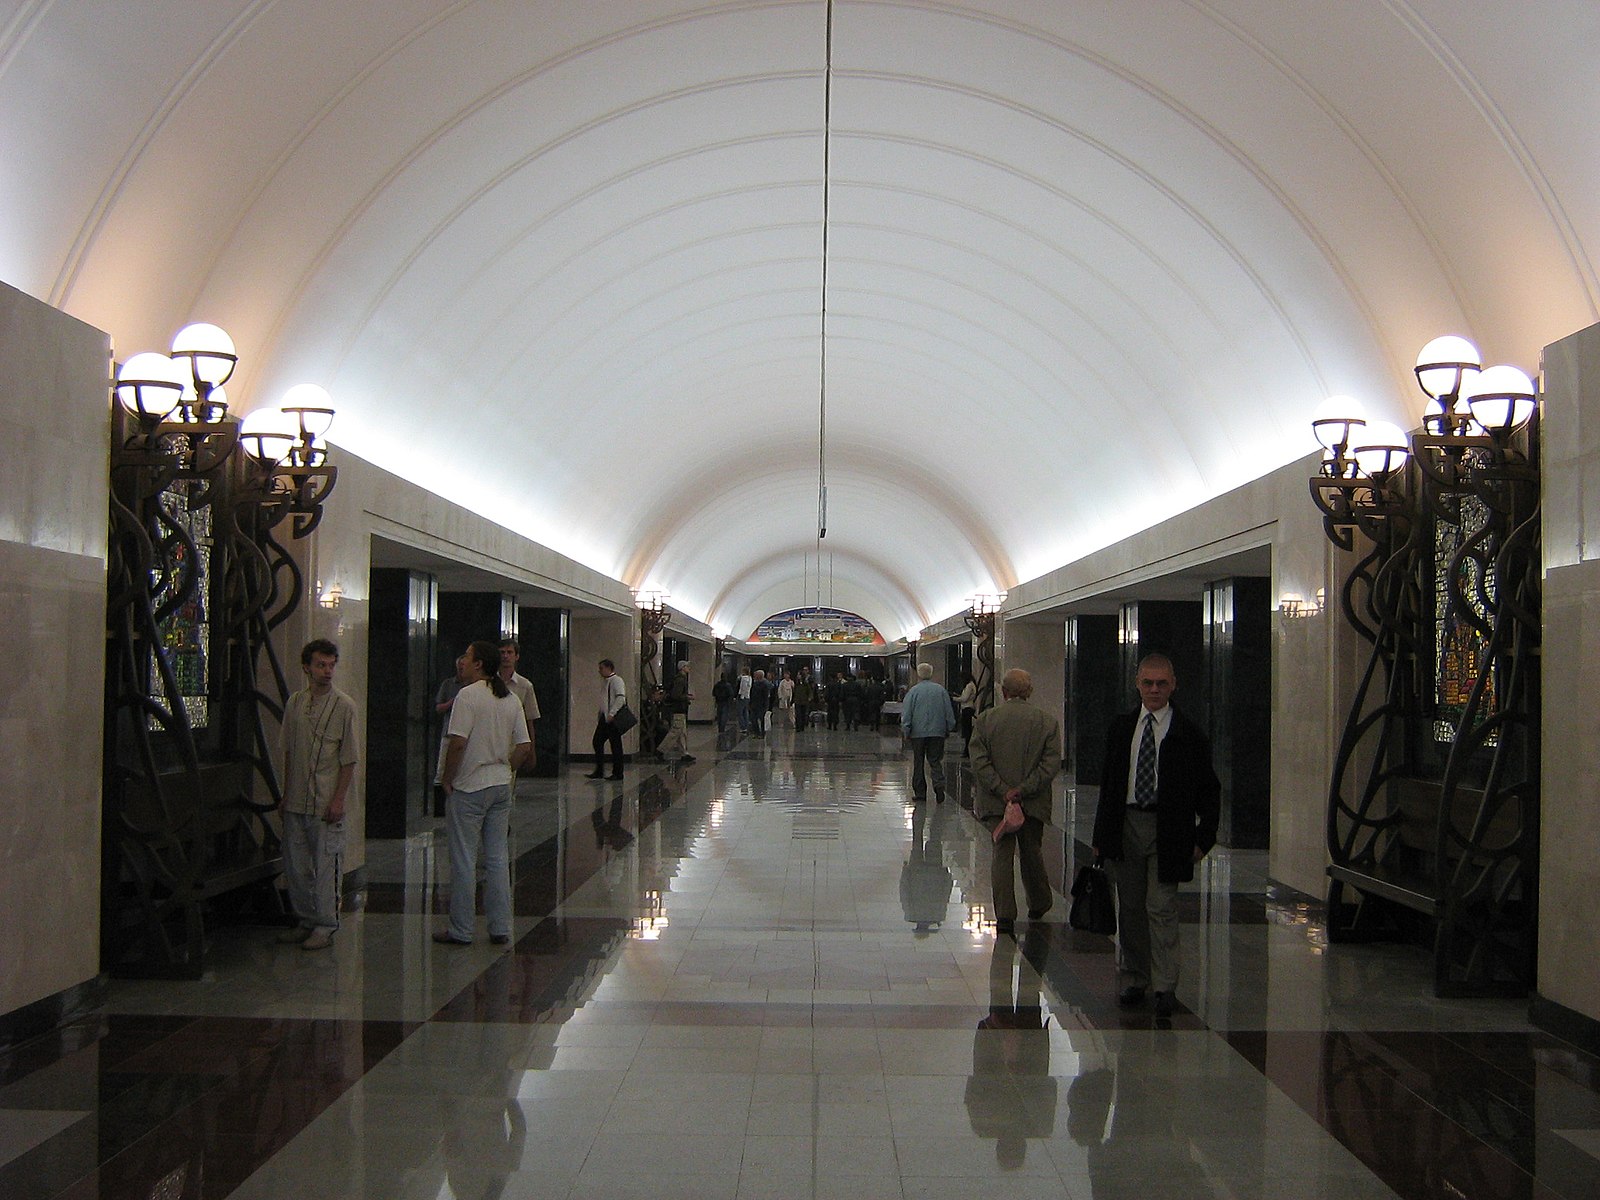 Трубная станция метро Москва